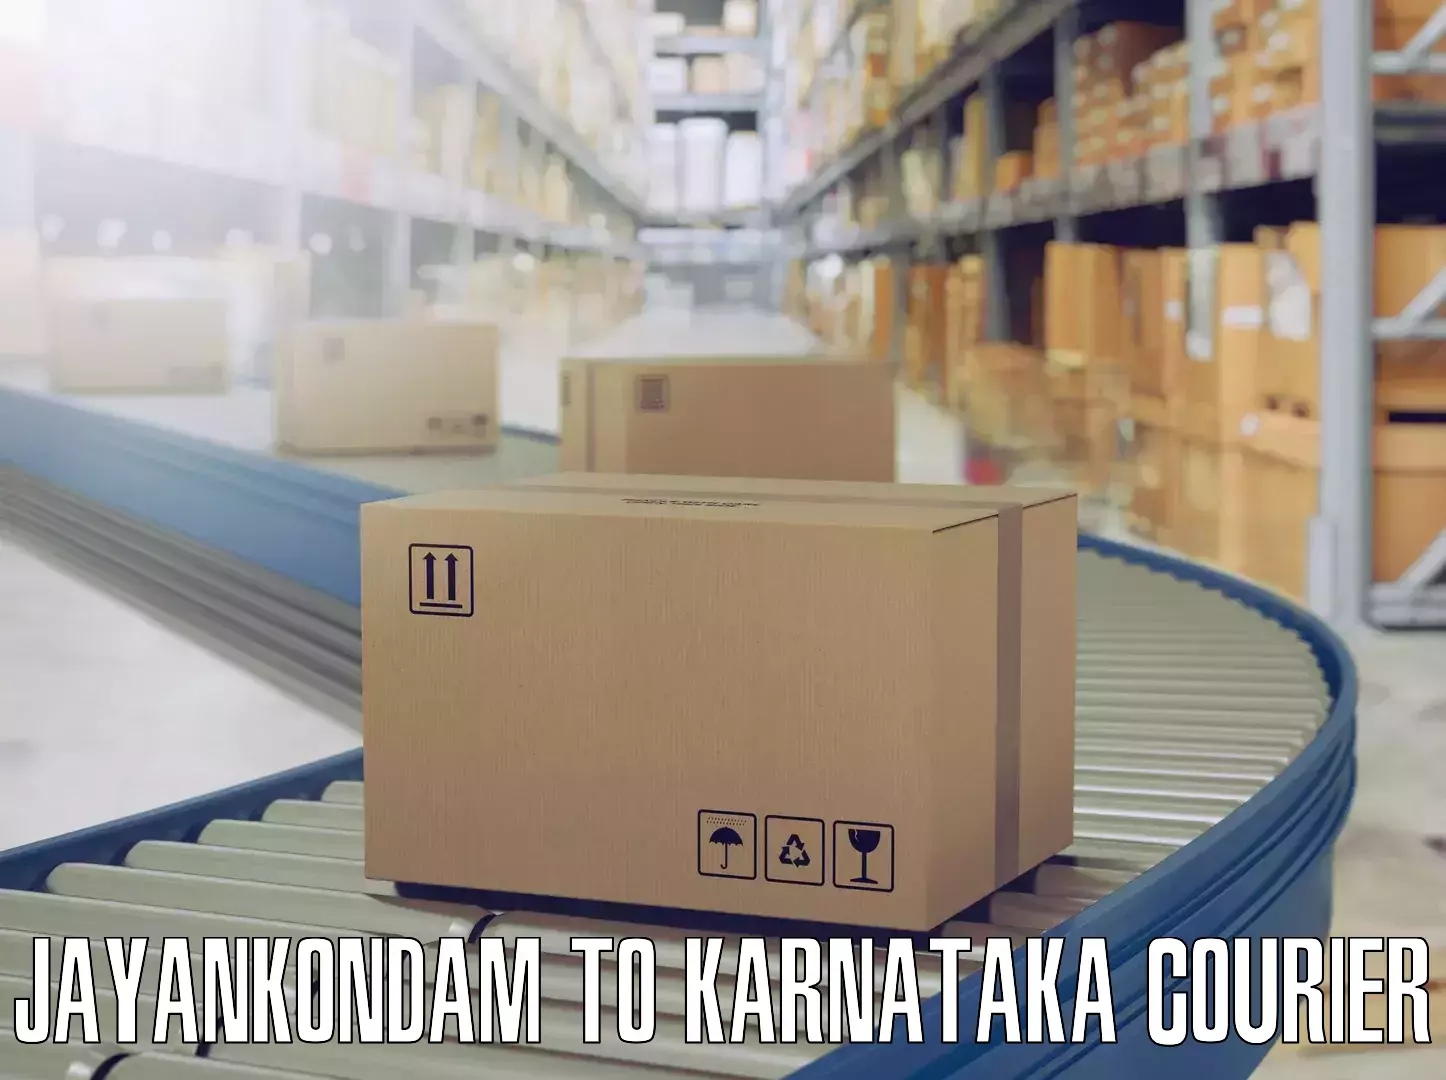 Cost-effective moving options Jayankondam to Karnataka